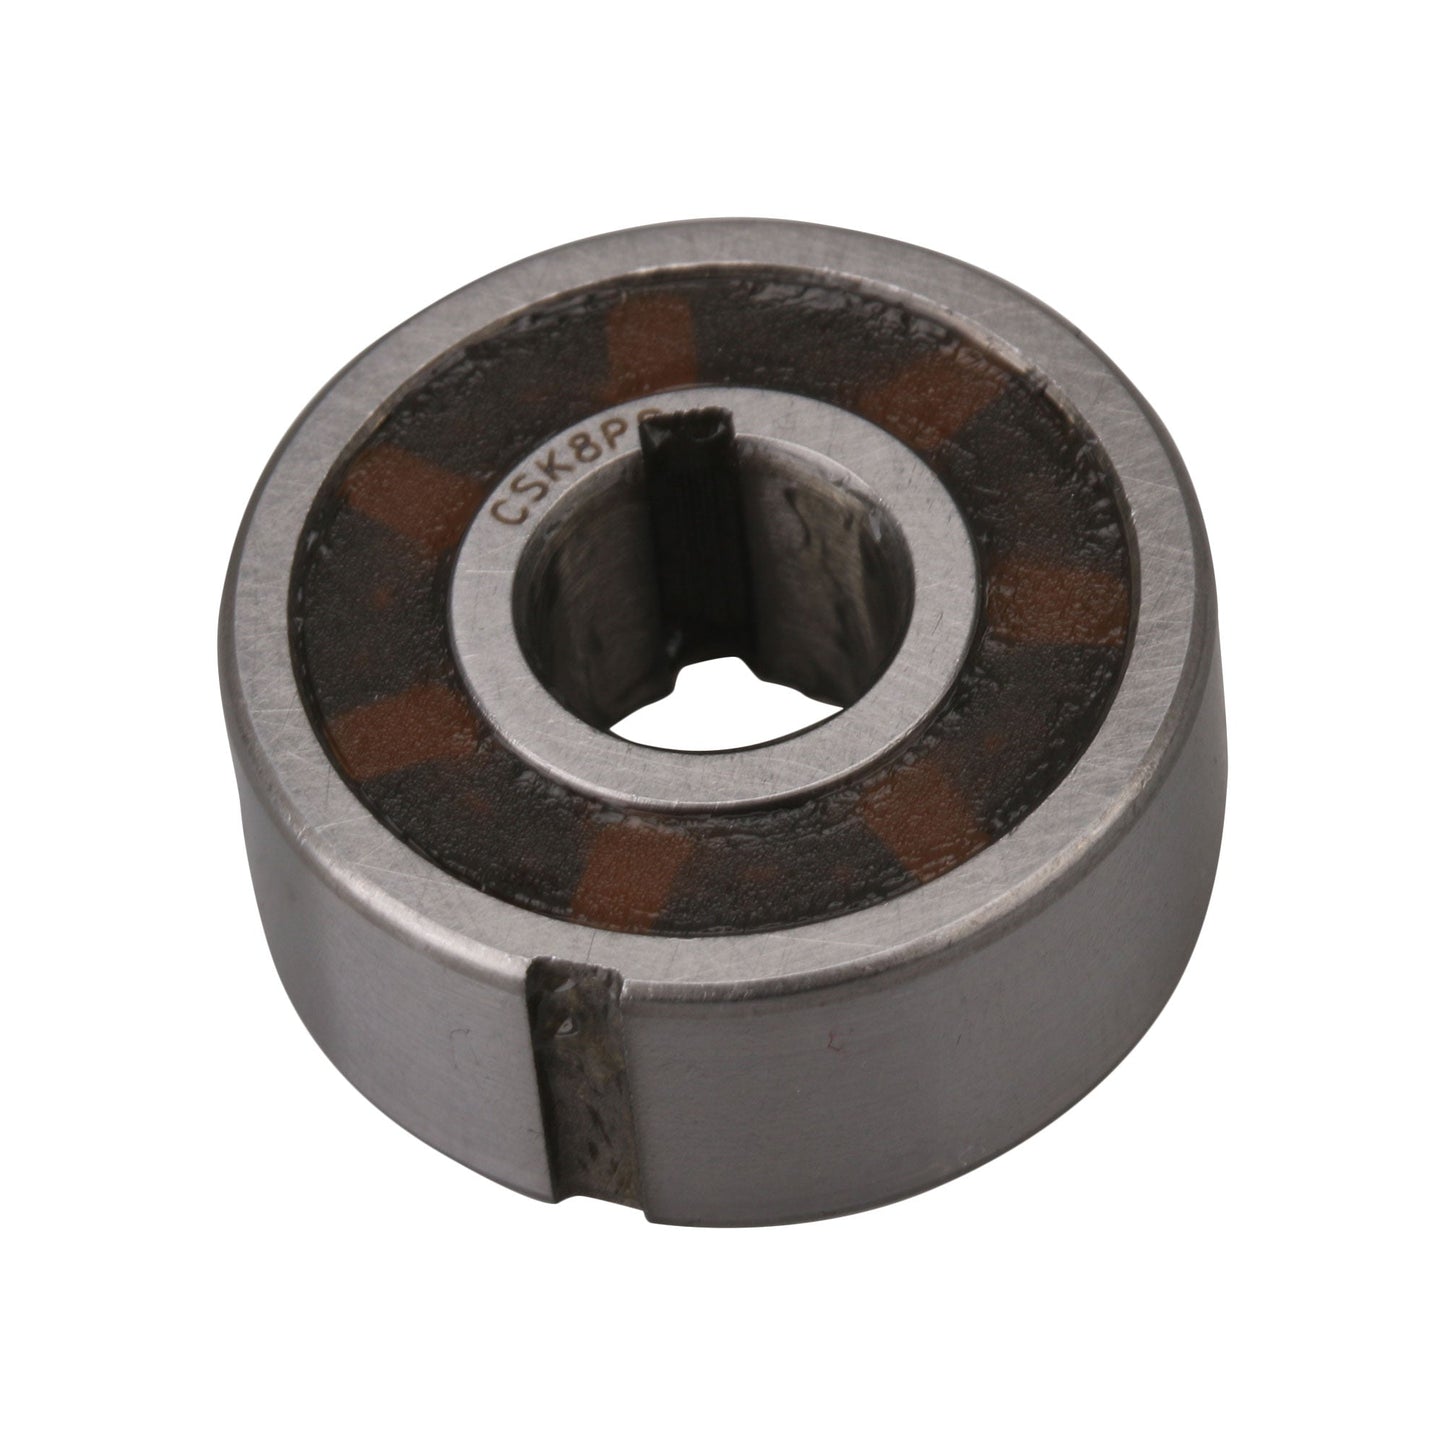 BQLZR Slot Width 2mm Bearing Steel with Internal & External Keyways Freewheel Backstop